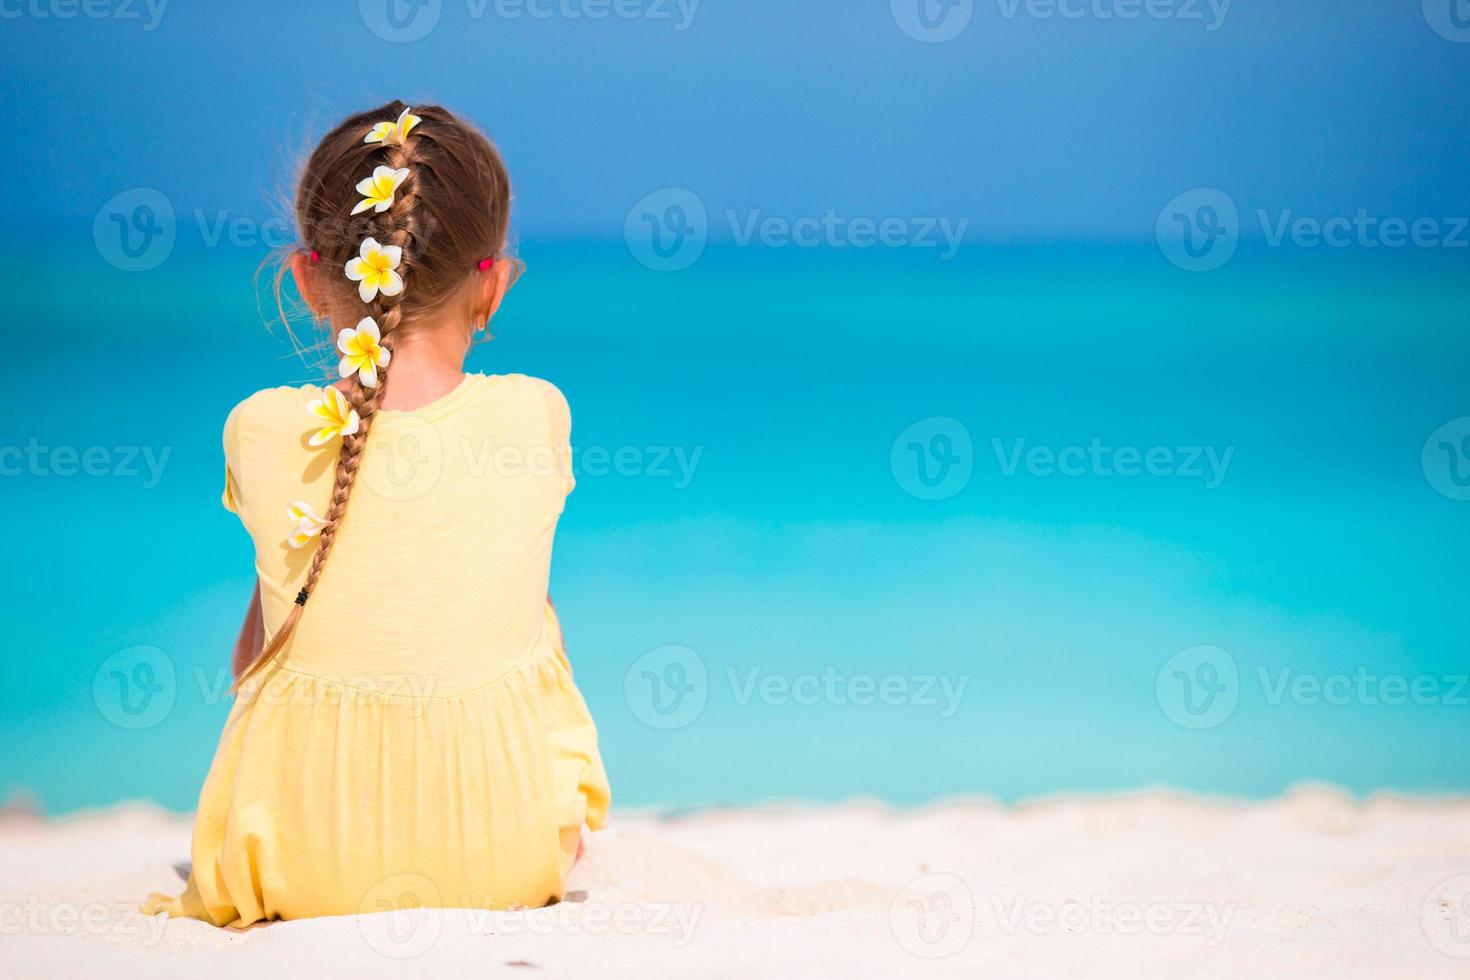 adorable niña con flores frangipani en peinado en la playa foto